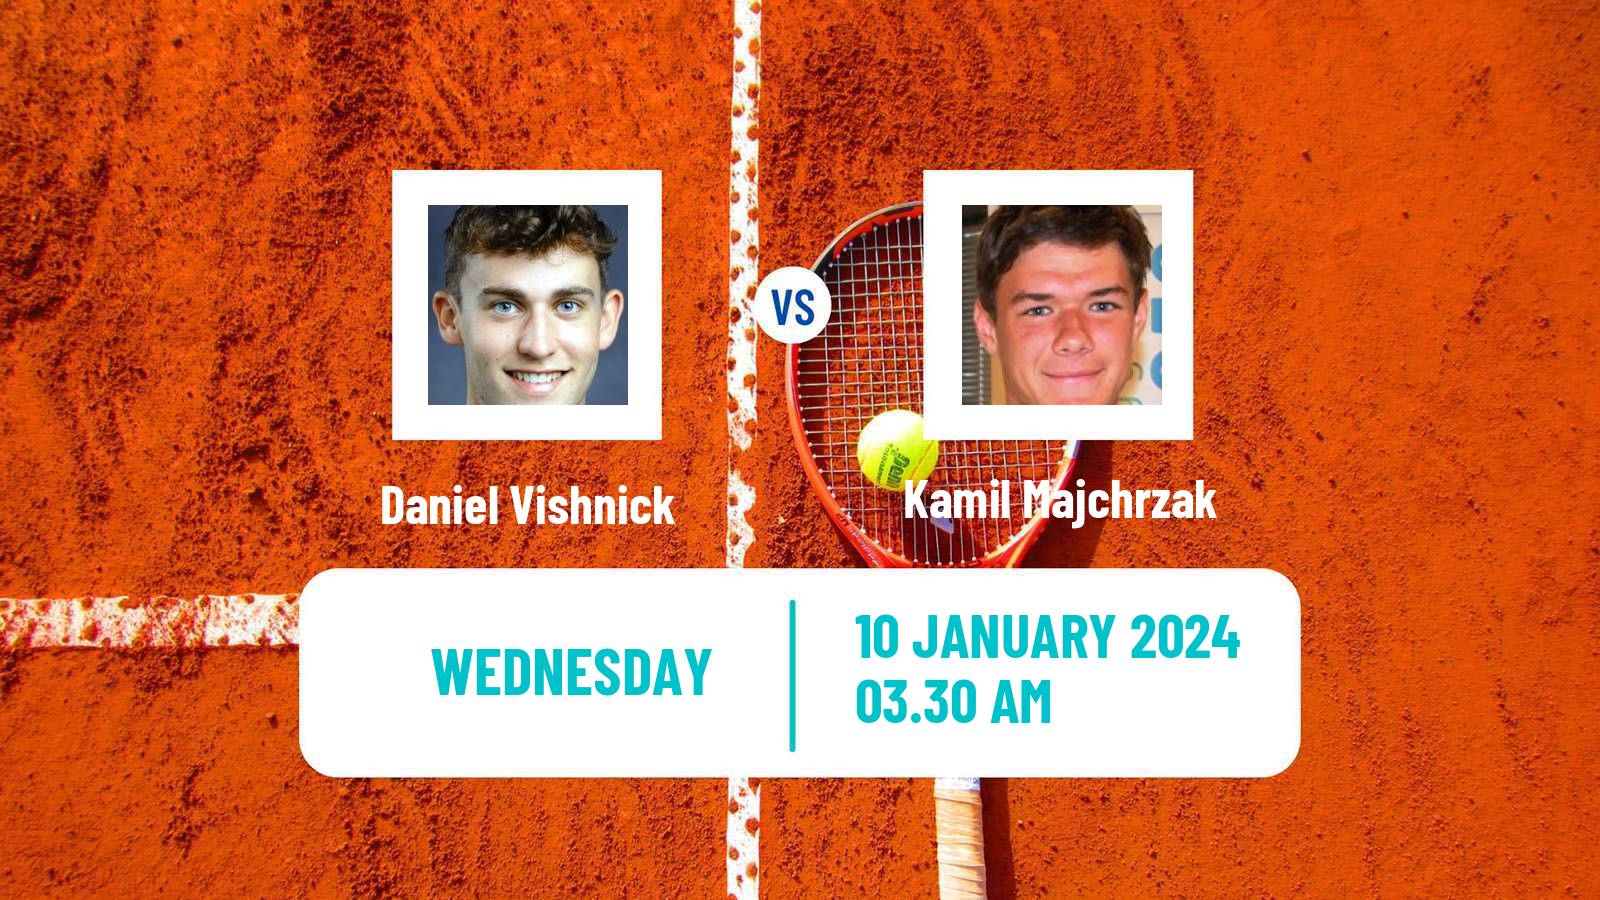 Tennis ITF M15 Monastir 2 Men Daniel Vishnick - Kamil Majchrzak